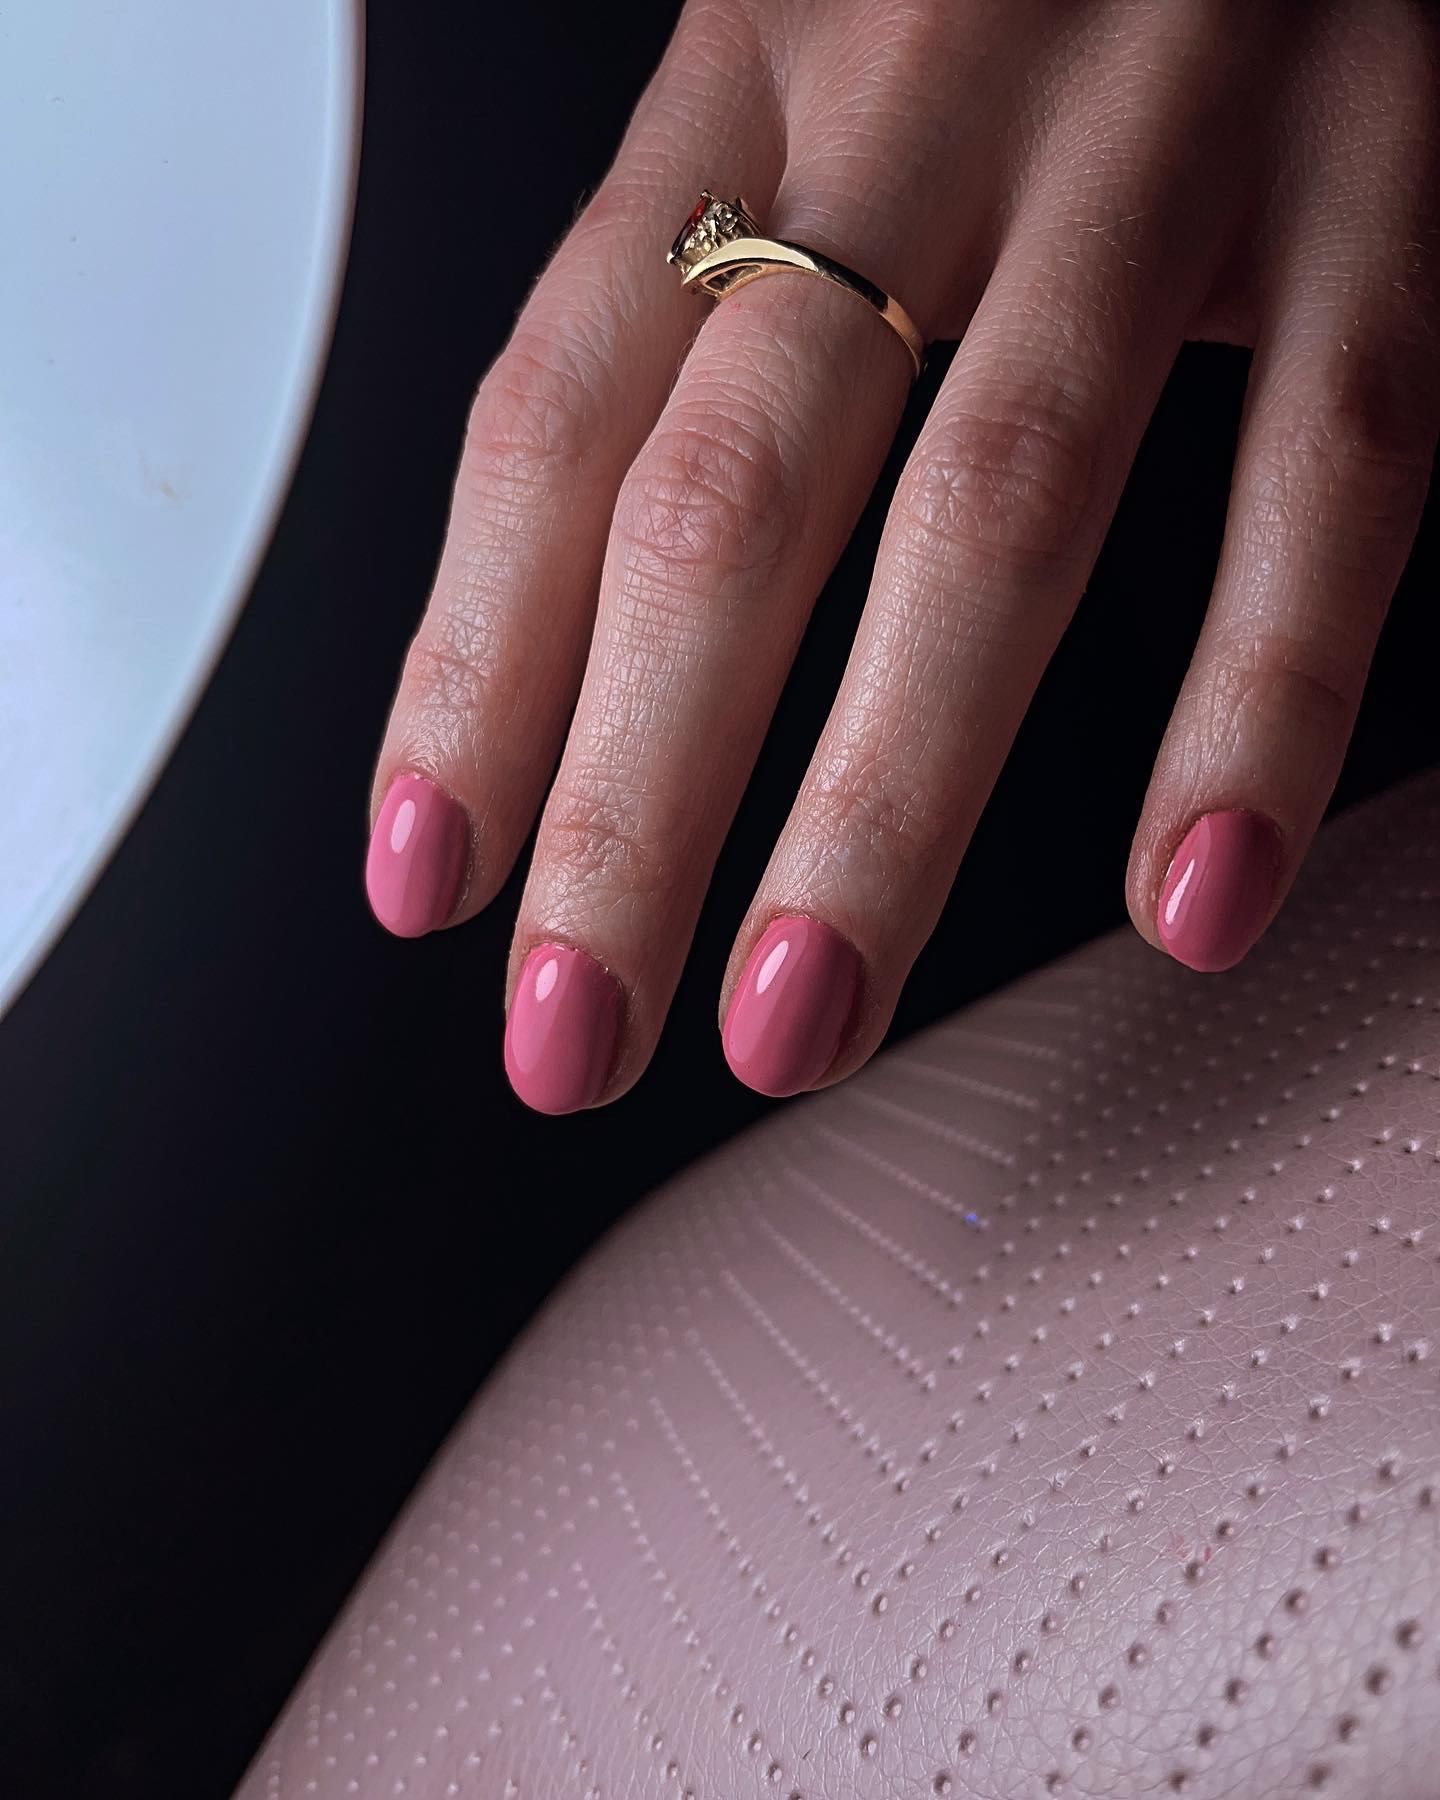 Stylizacja paznokci manicure hybrydowy żelowy i inne